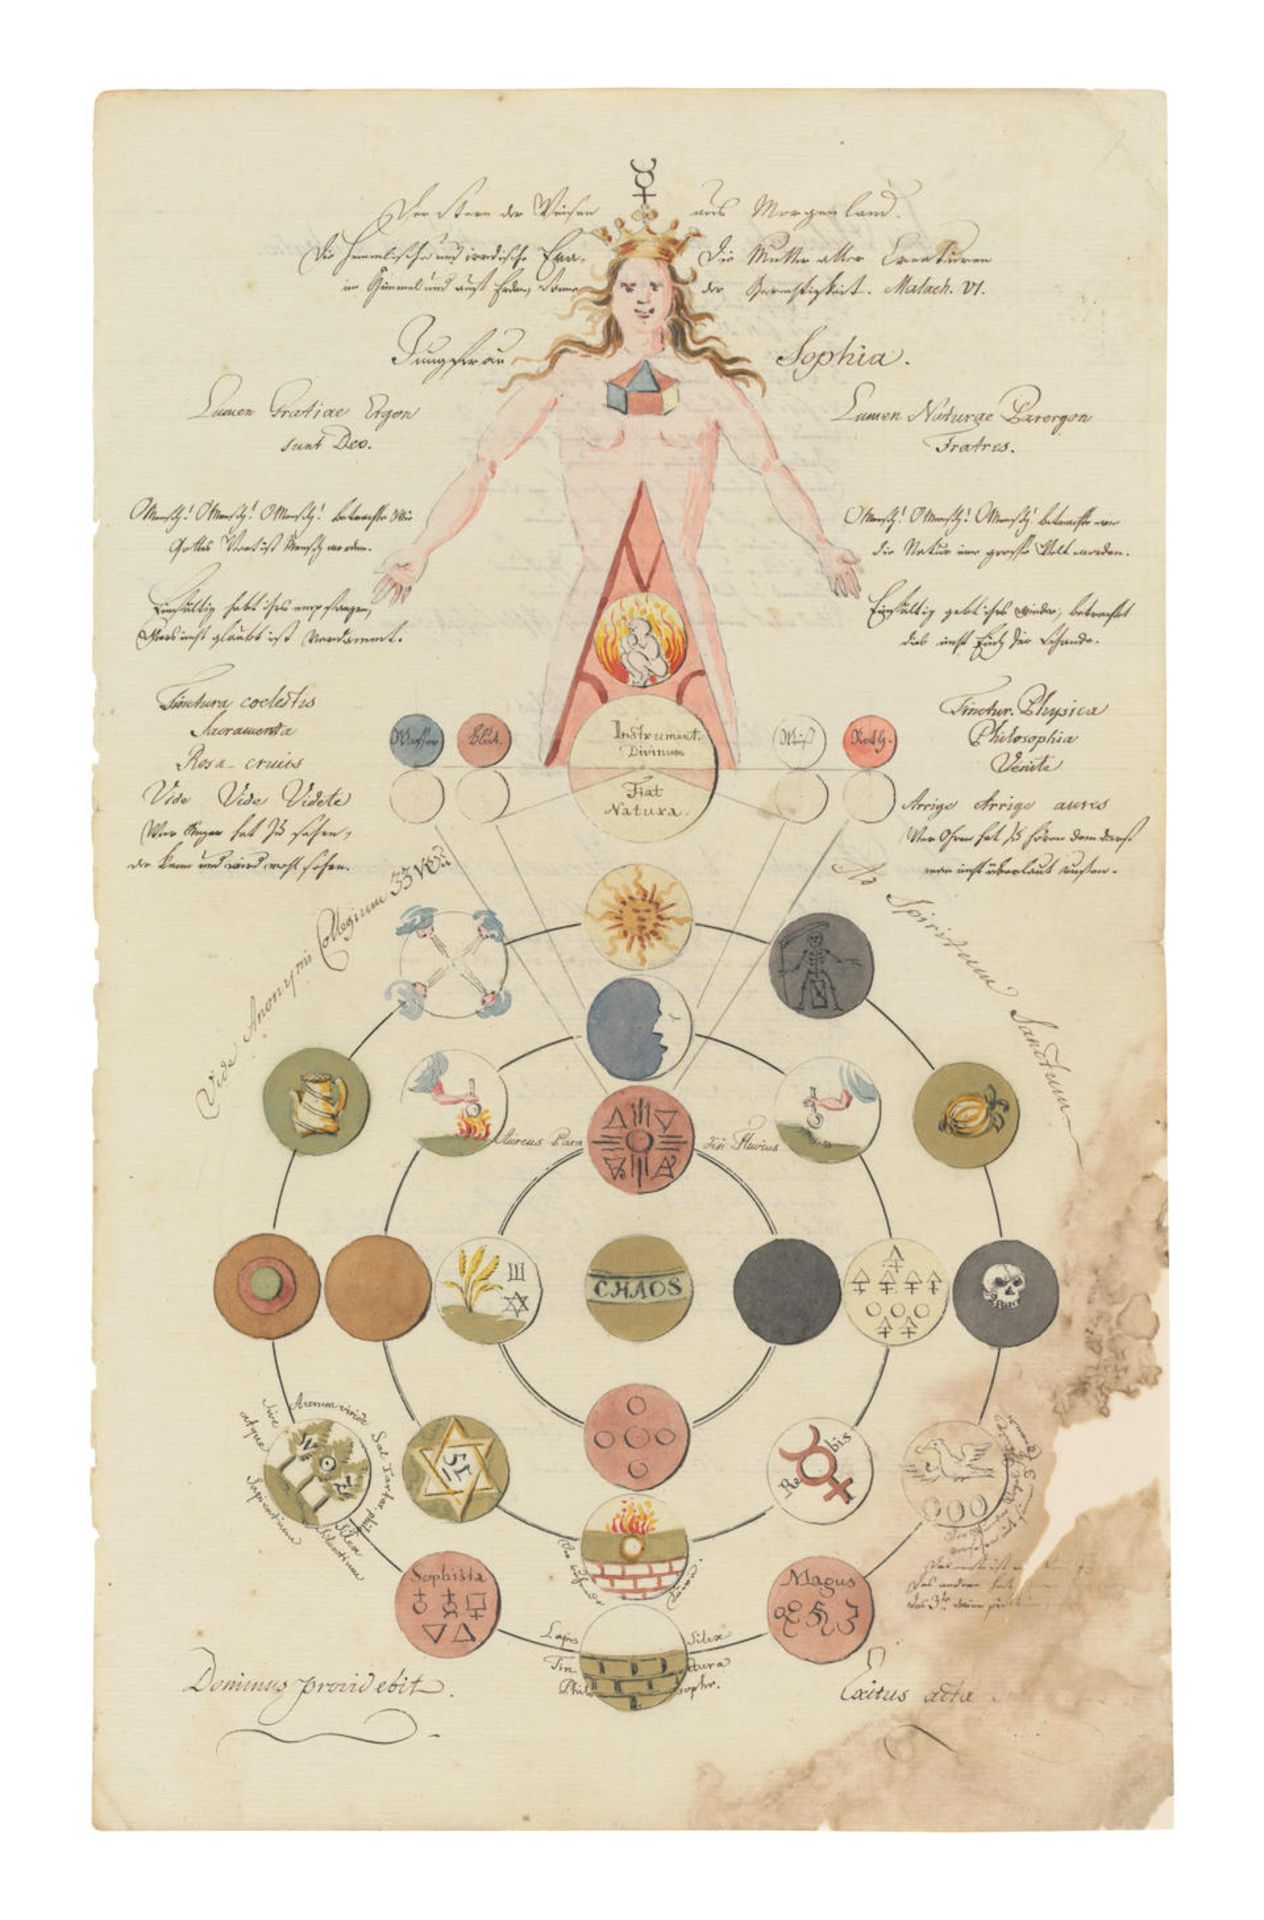 [ALCHEMY] ROSICRUCIAN ALCHEMICAL MANUSCRIPT. MYSTERIUM MAGNUM. Illustrated alchemical manuscript...